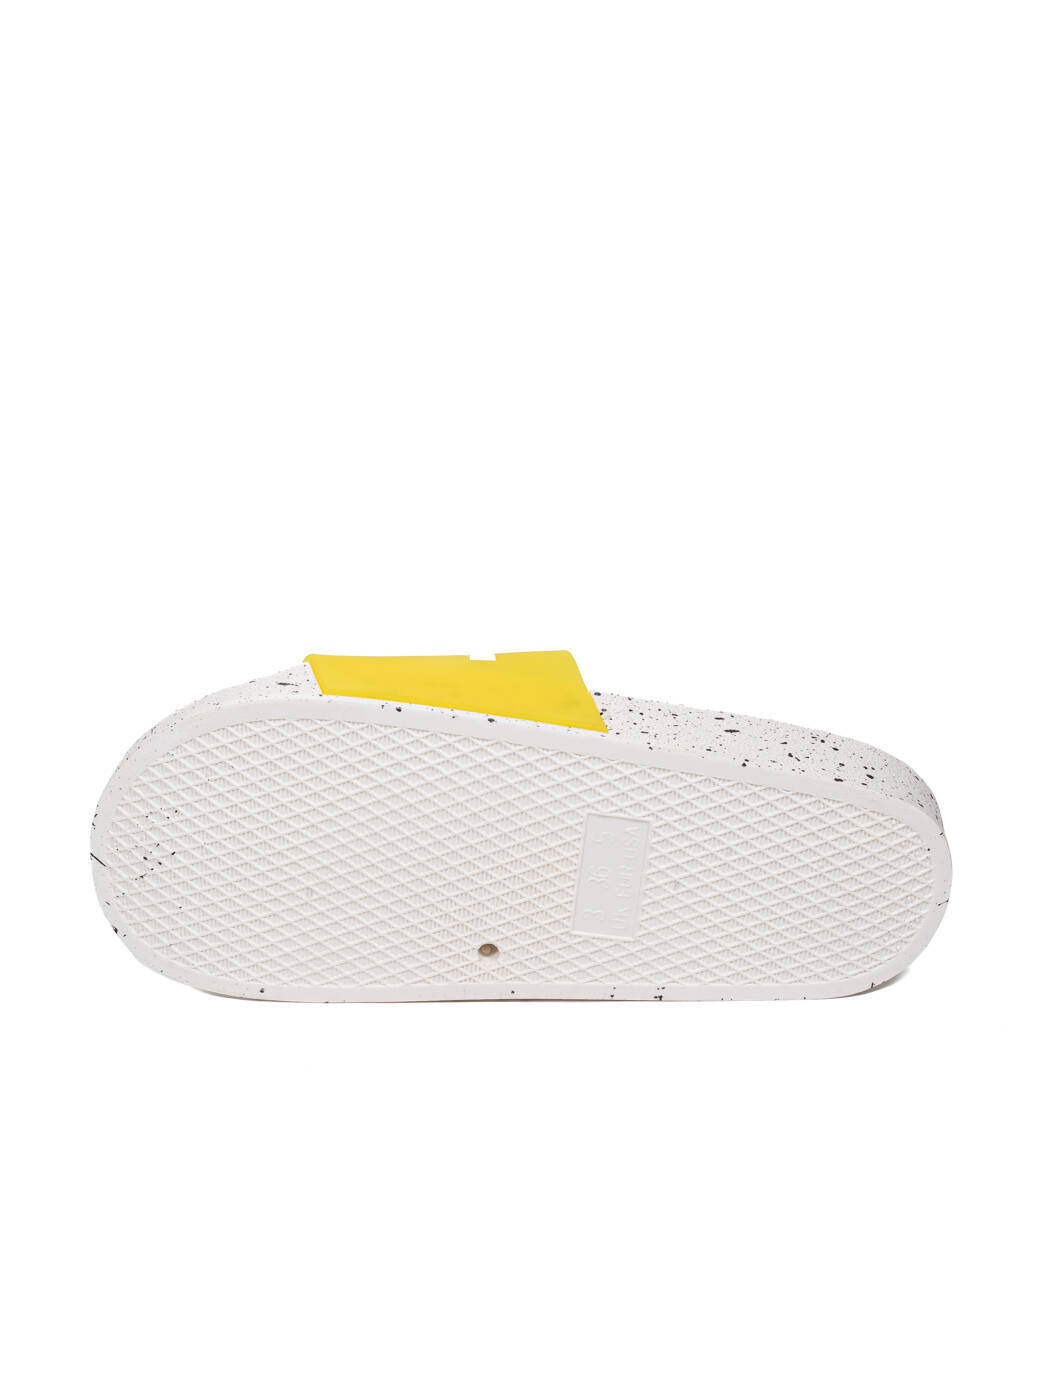 Шлепанцы женские желтые силикон платформа лето от производителя 5M вид 2